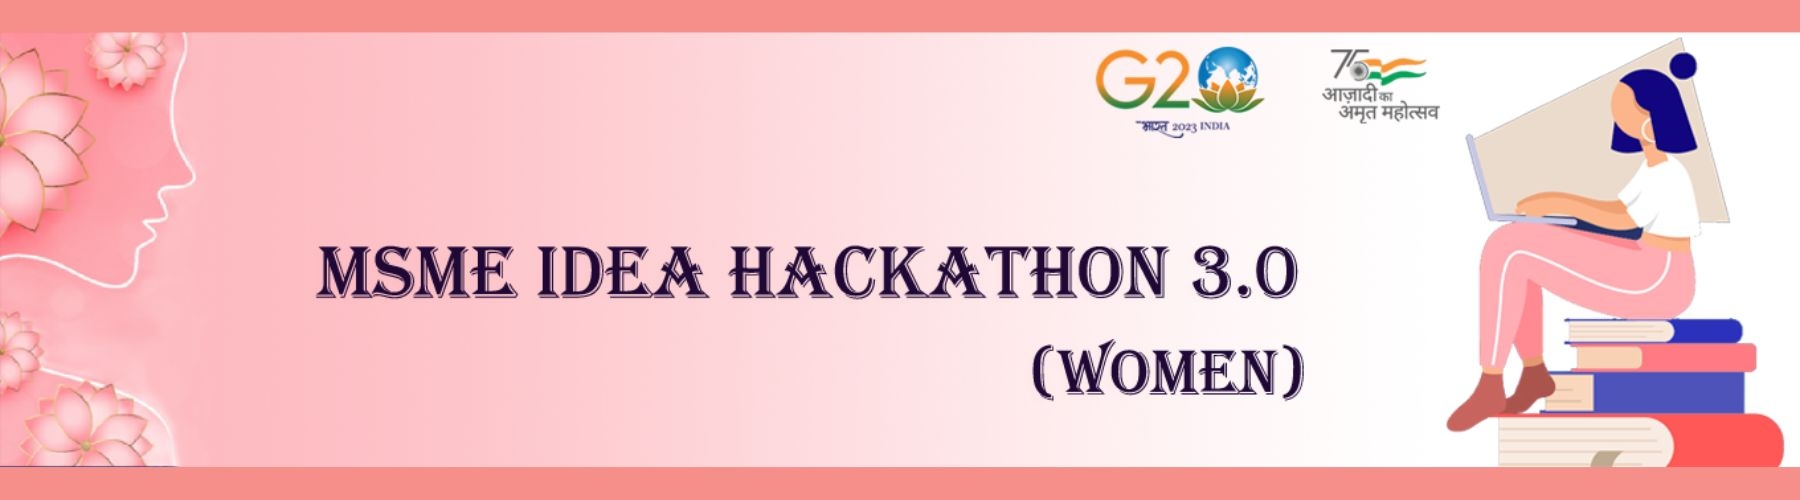 Ideas Hackathon